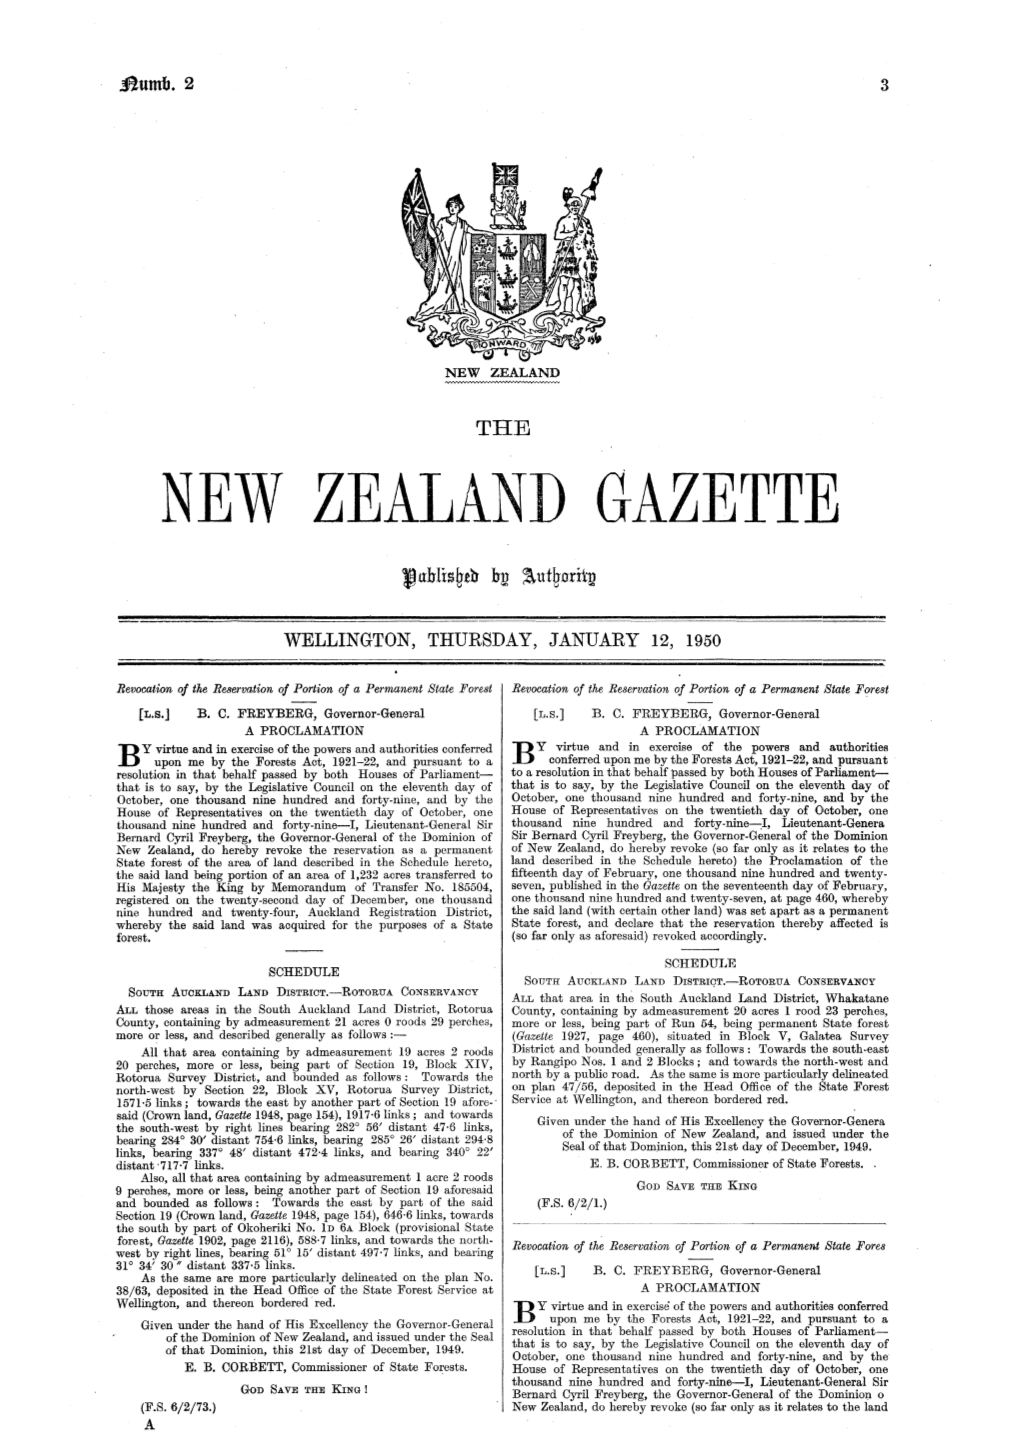 No 2, 12 January 1950, 3